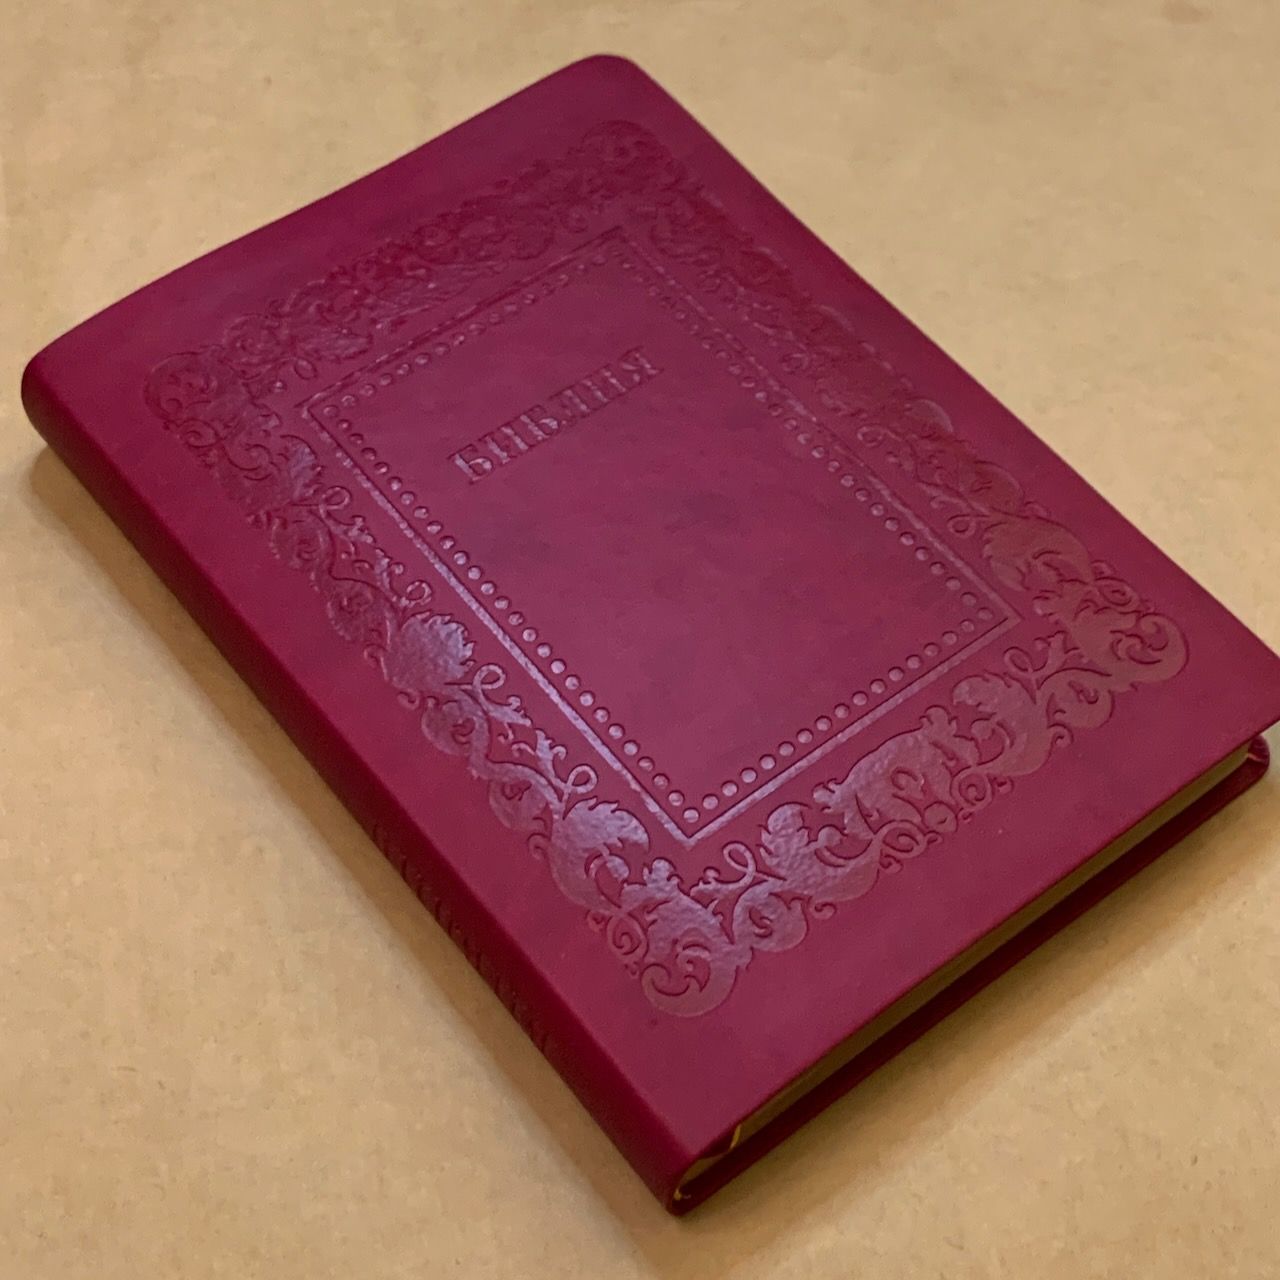 Библия 076 код H4,  дизайн "термо рамка барокко", переплет из искусственной кожи, цвет малина матовый